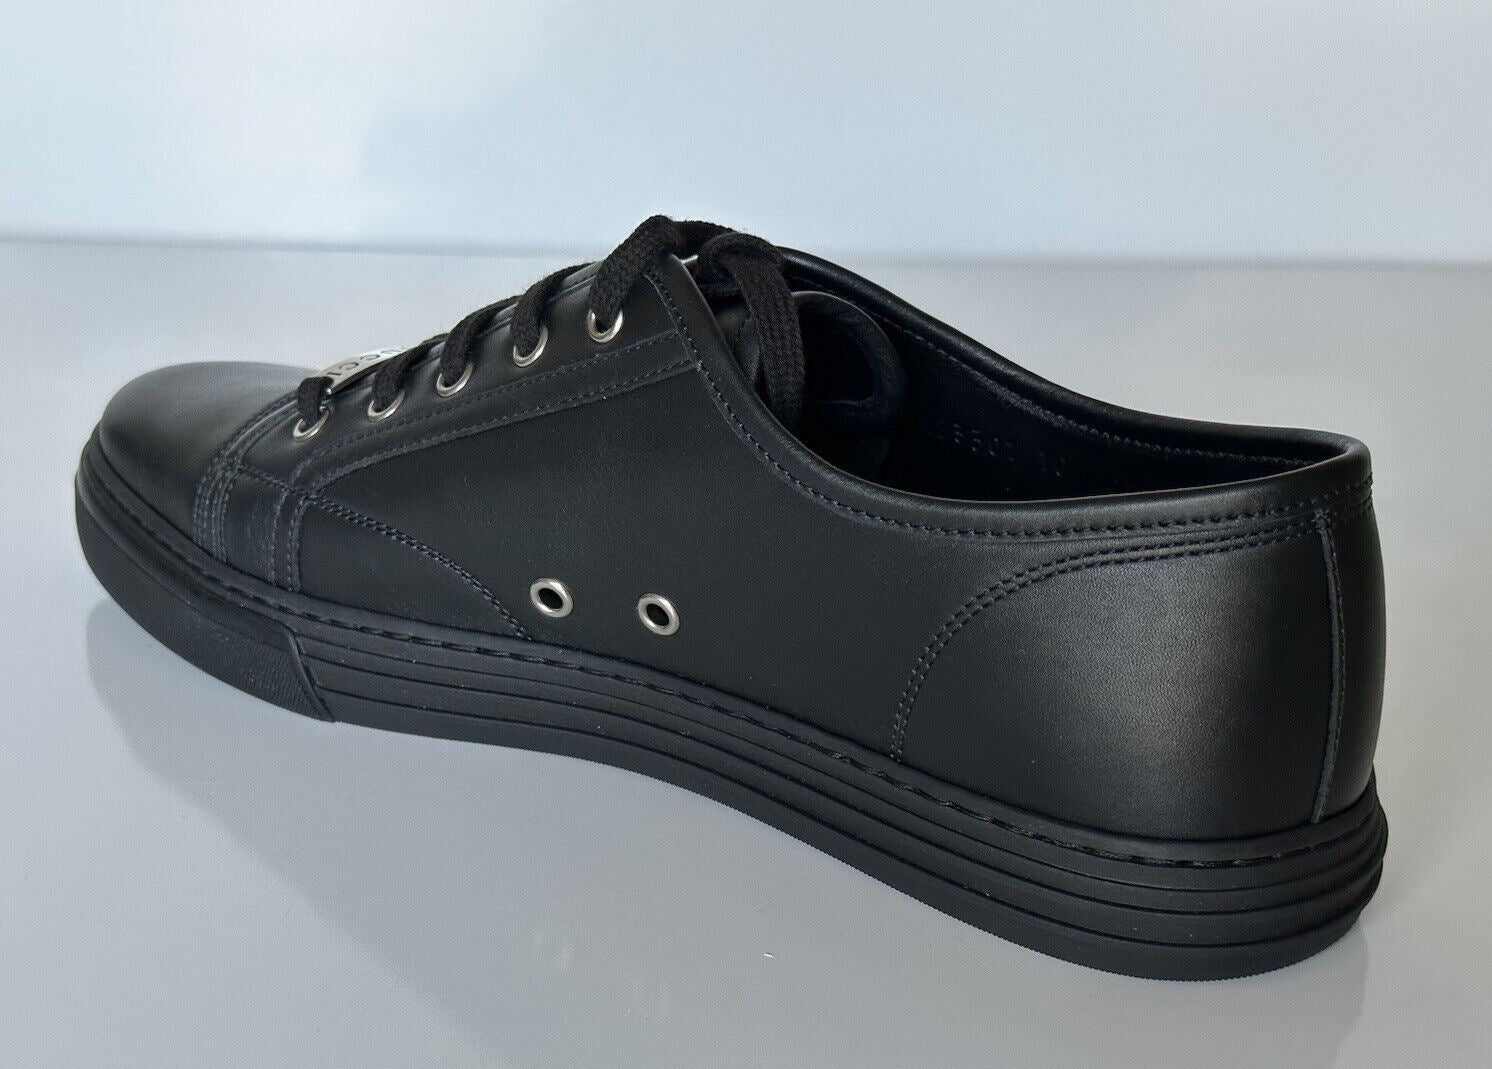 NIB Gucci Herren Low-Top-Sneaker aus schwarzem weichem Leder 10,5 US (Gucci 10) 423301 IT 